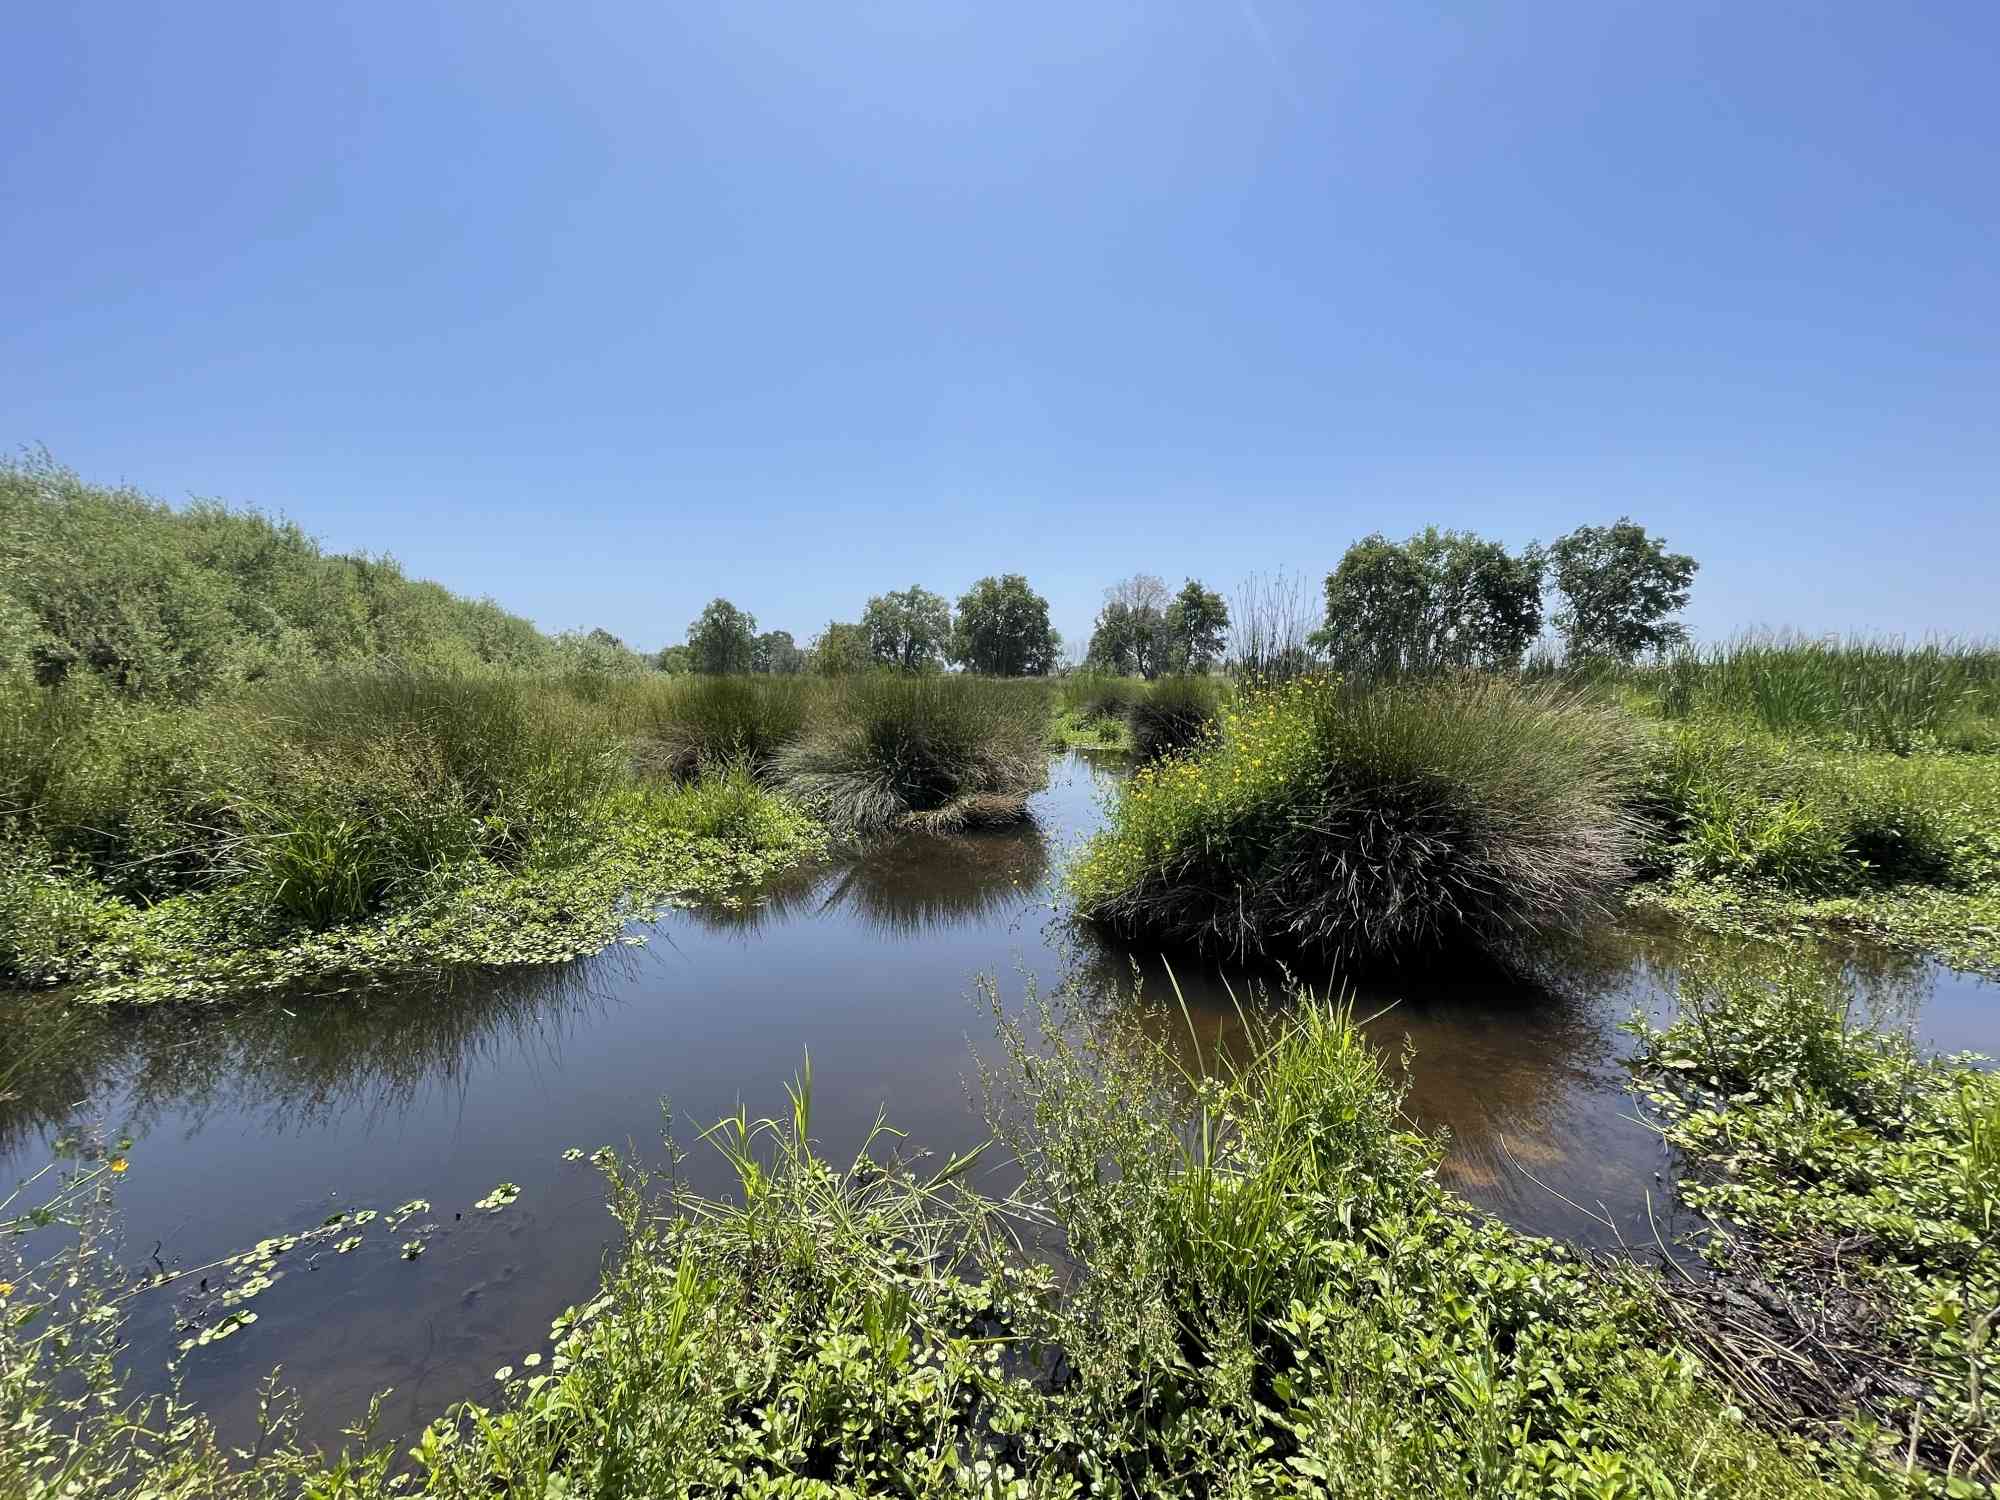 2023.05.24-Water Plants in a Marsh in Doty Ravine-Sophia Markowska-DOW